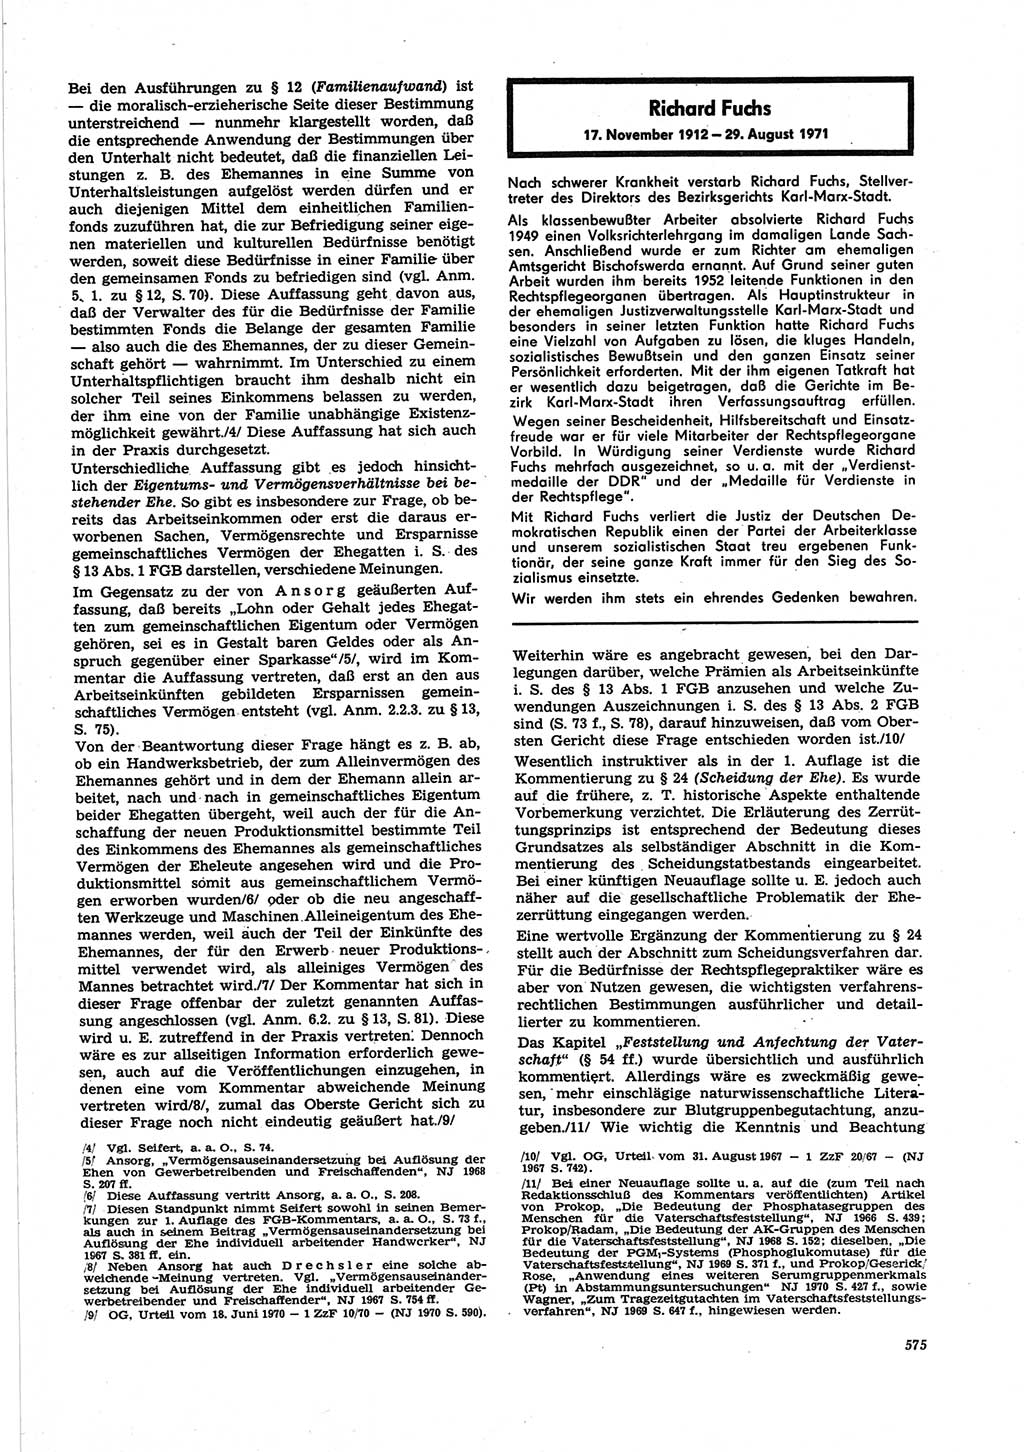 Neue Justiz (NJ), Zeitschrift für Recht und Rechtswissenschaft [Deutsche Demokratische Republik (DDR)], 25. Jahrgang 1971, Seite 575 (NJ DDR 1971, S. 575)